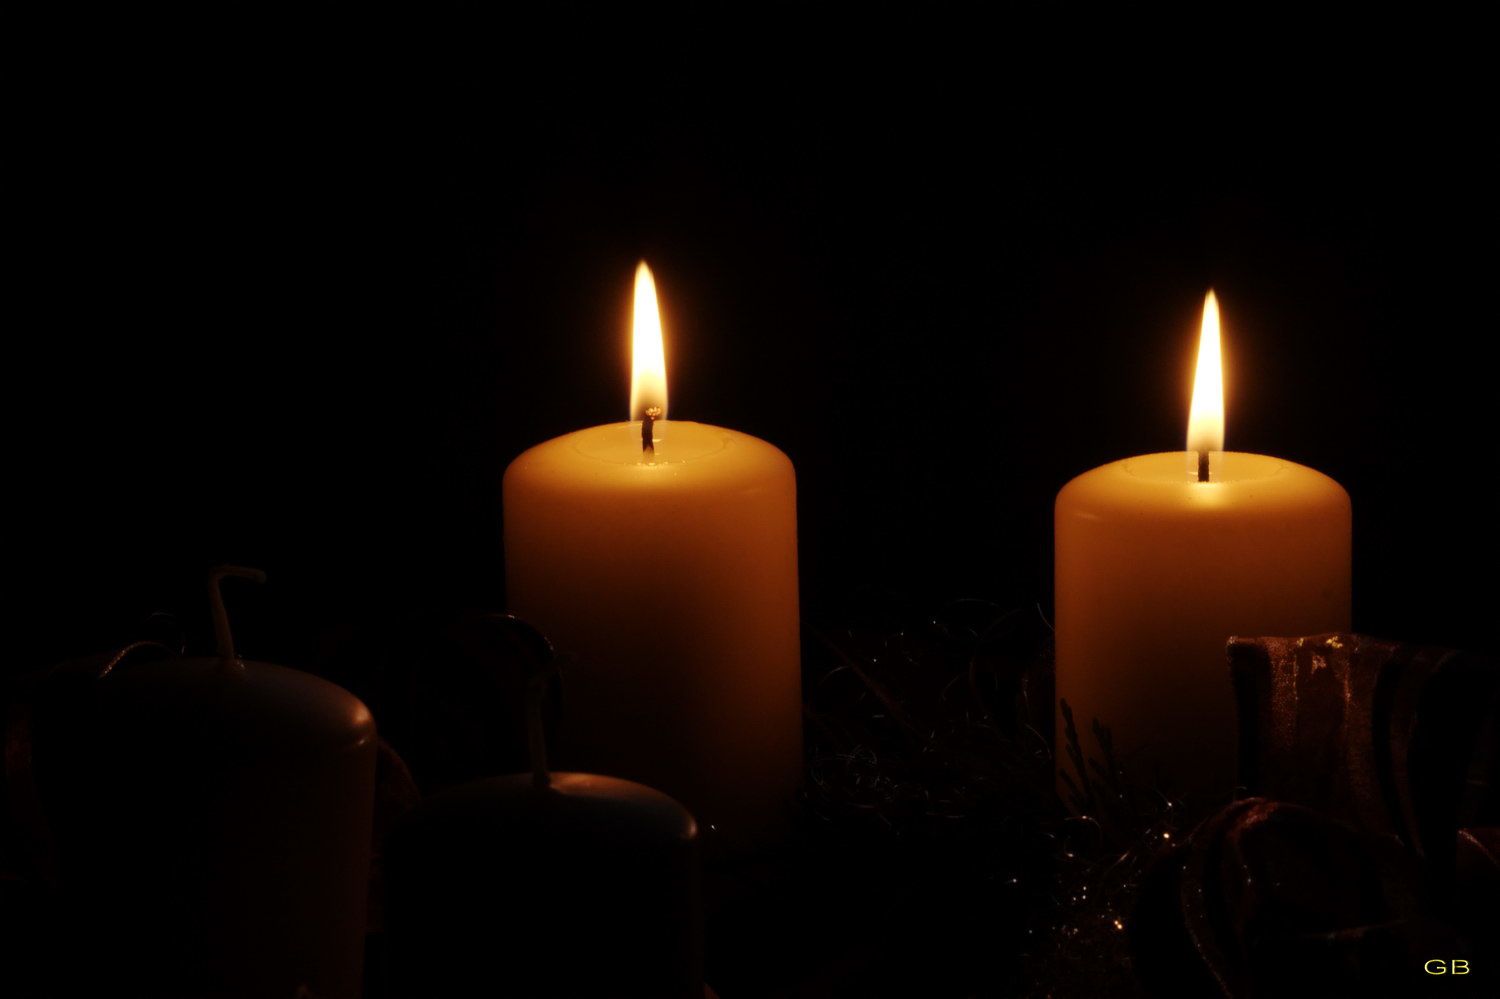 deux bougies pour le deuxième dimanche de l'avent - visions